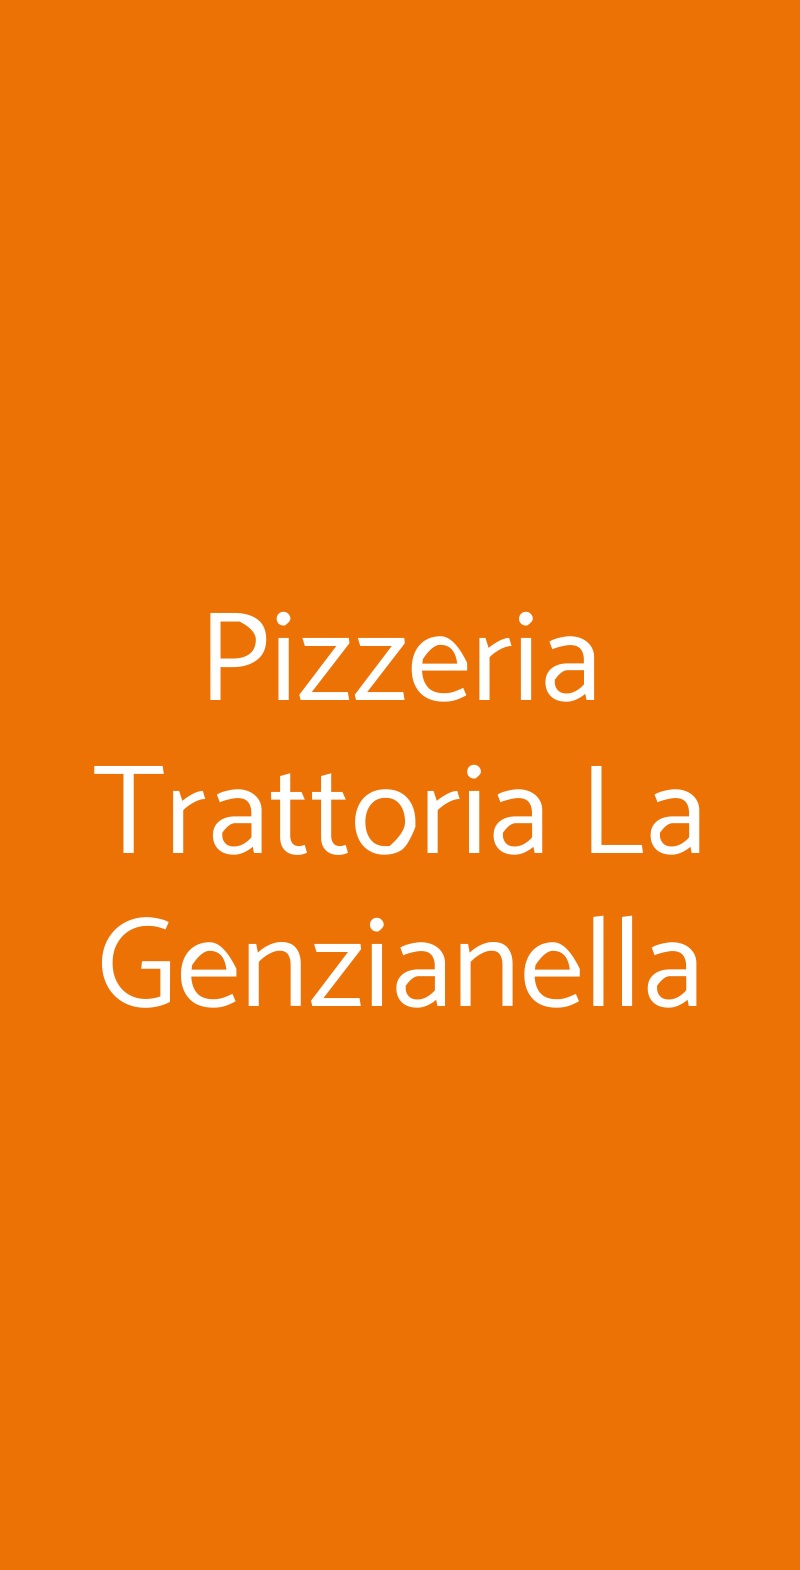 Pizzeria Trattoria La Genzianella Corniglio menù 1 pagina